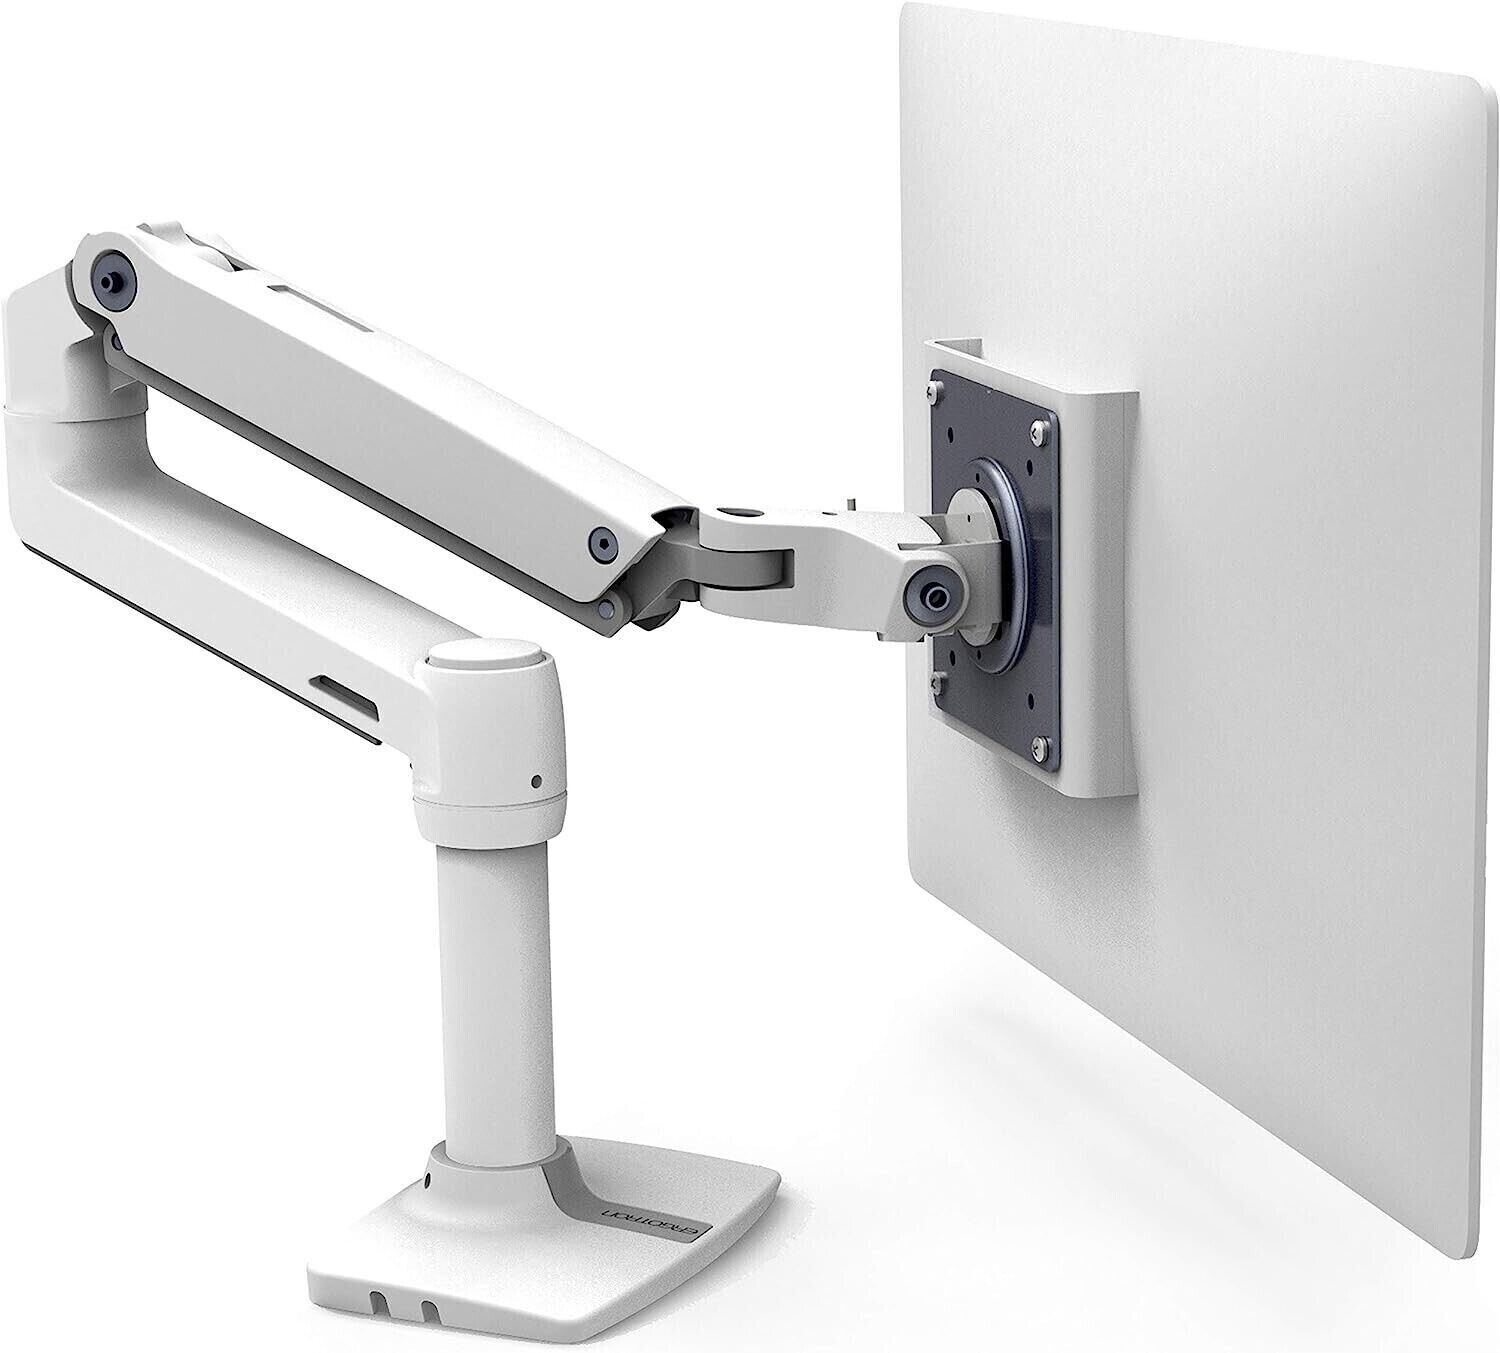 Ergotron 45-490-216 LX Desk Mount Monitor Arm White * NEW OPEN